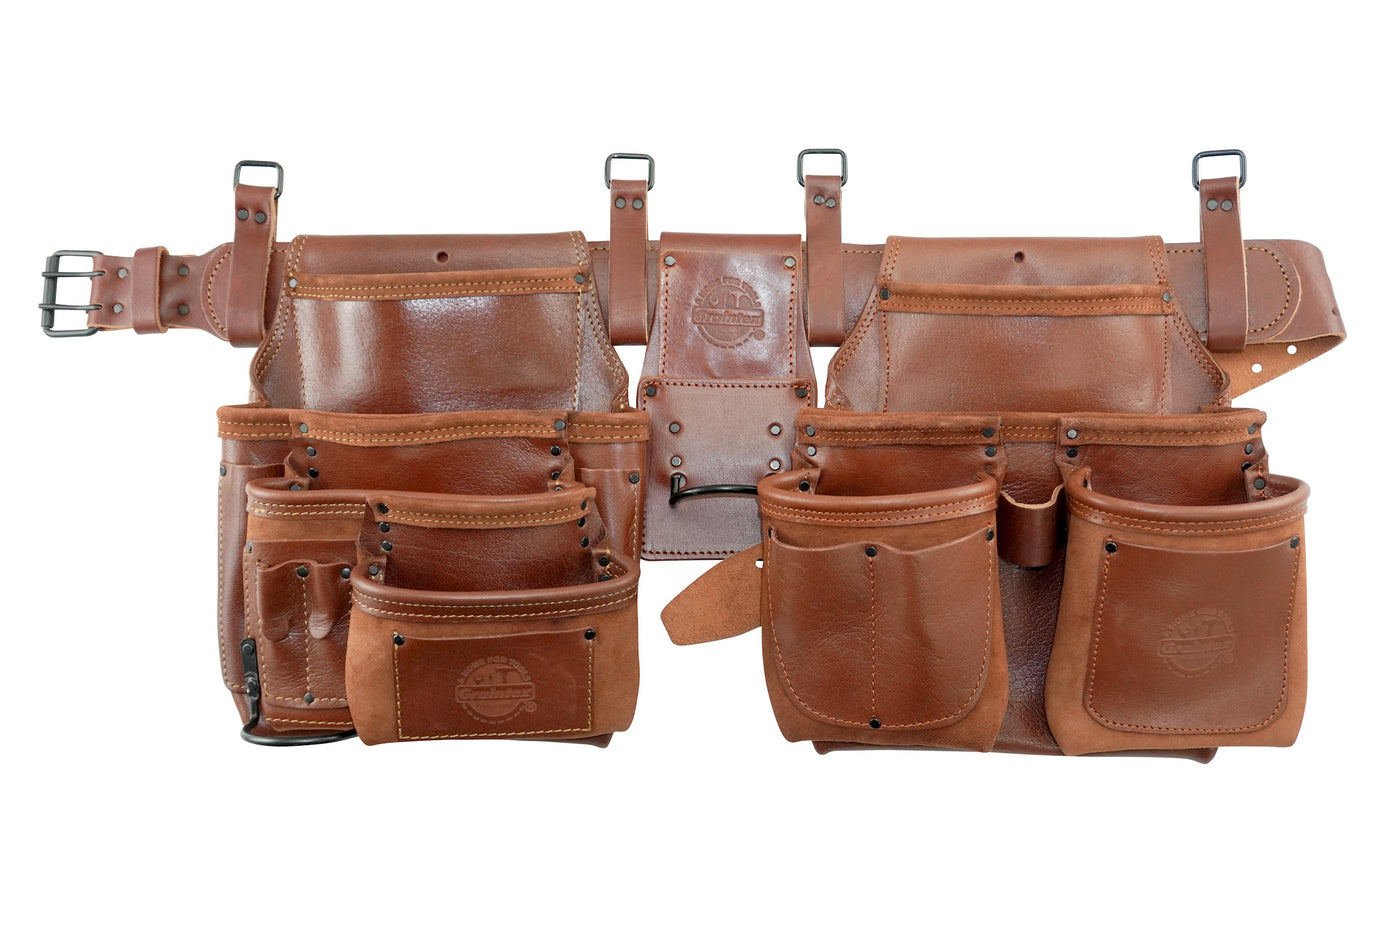 AD2774 :: 4 Piece 18 Pocket Framer's Tool Belt Combo Ambassador Series Chestnut Brown Color Grain Leather